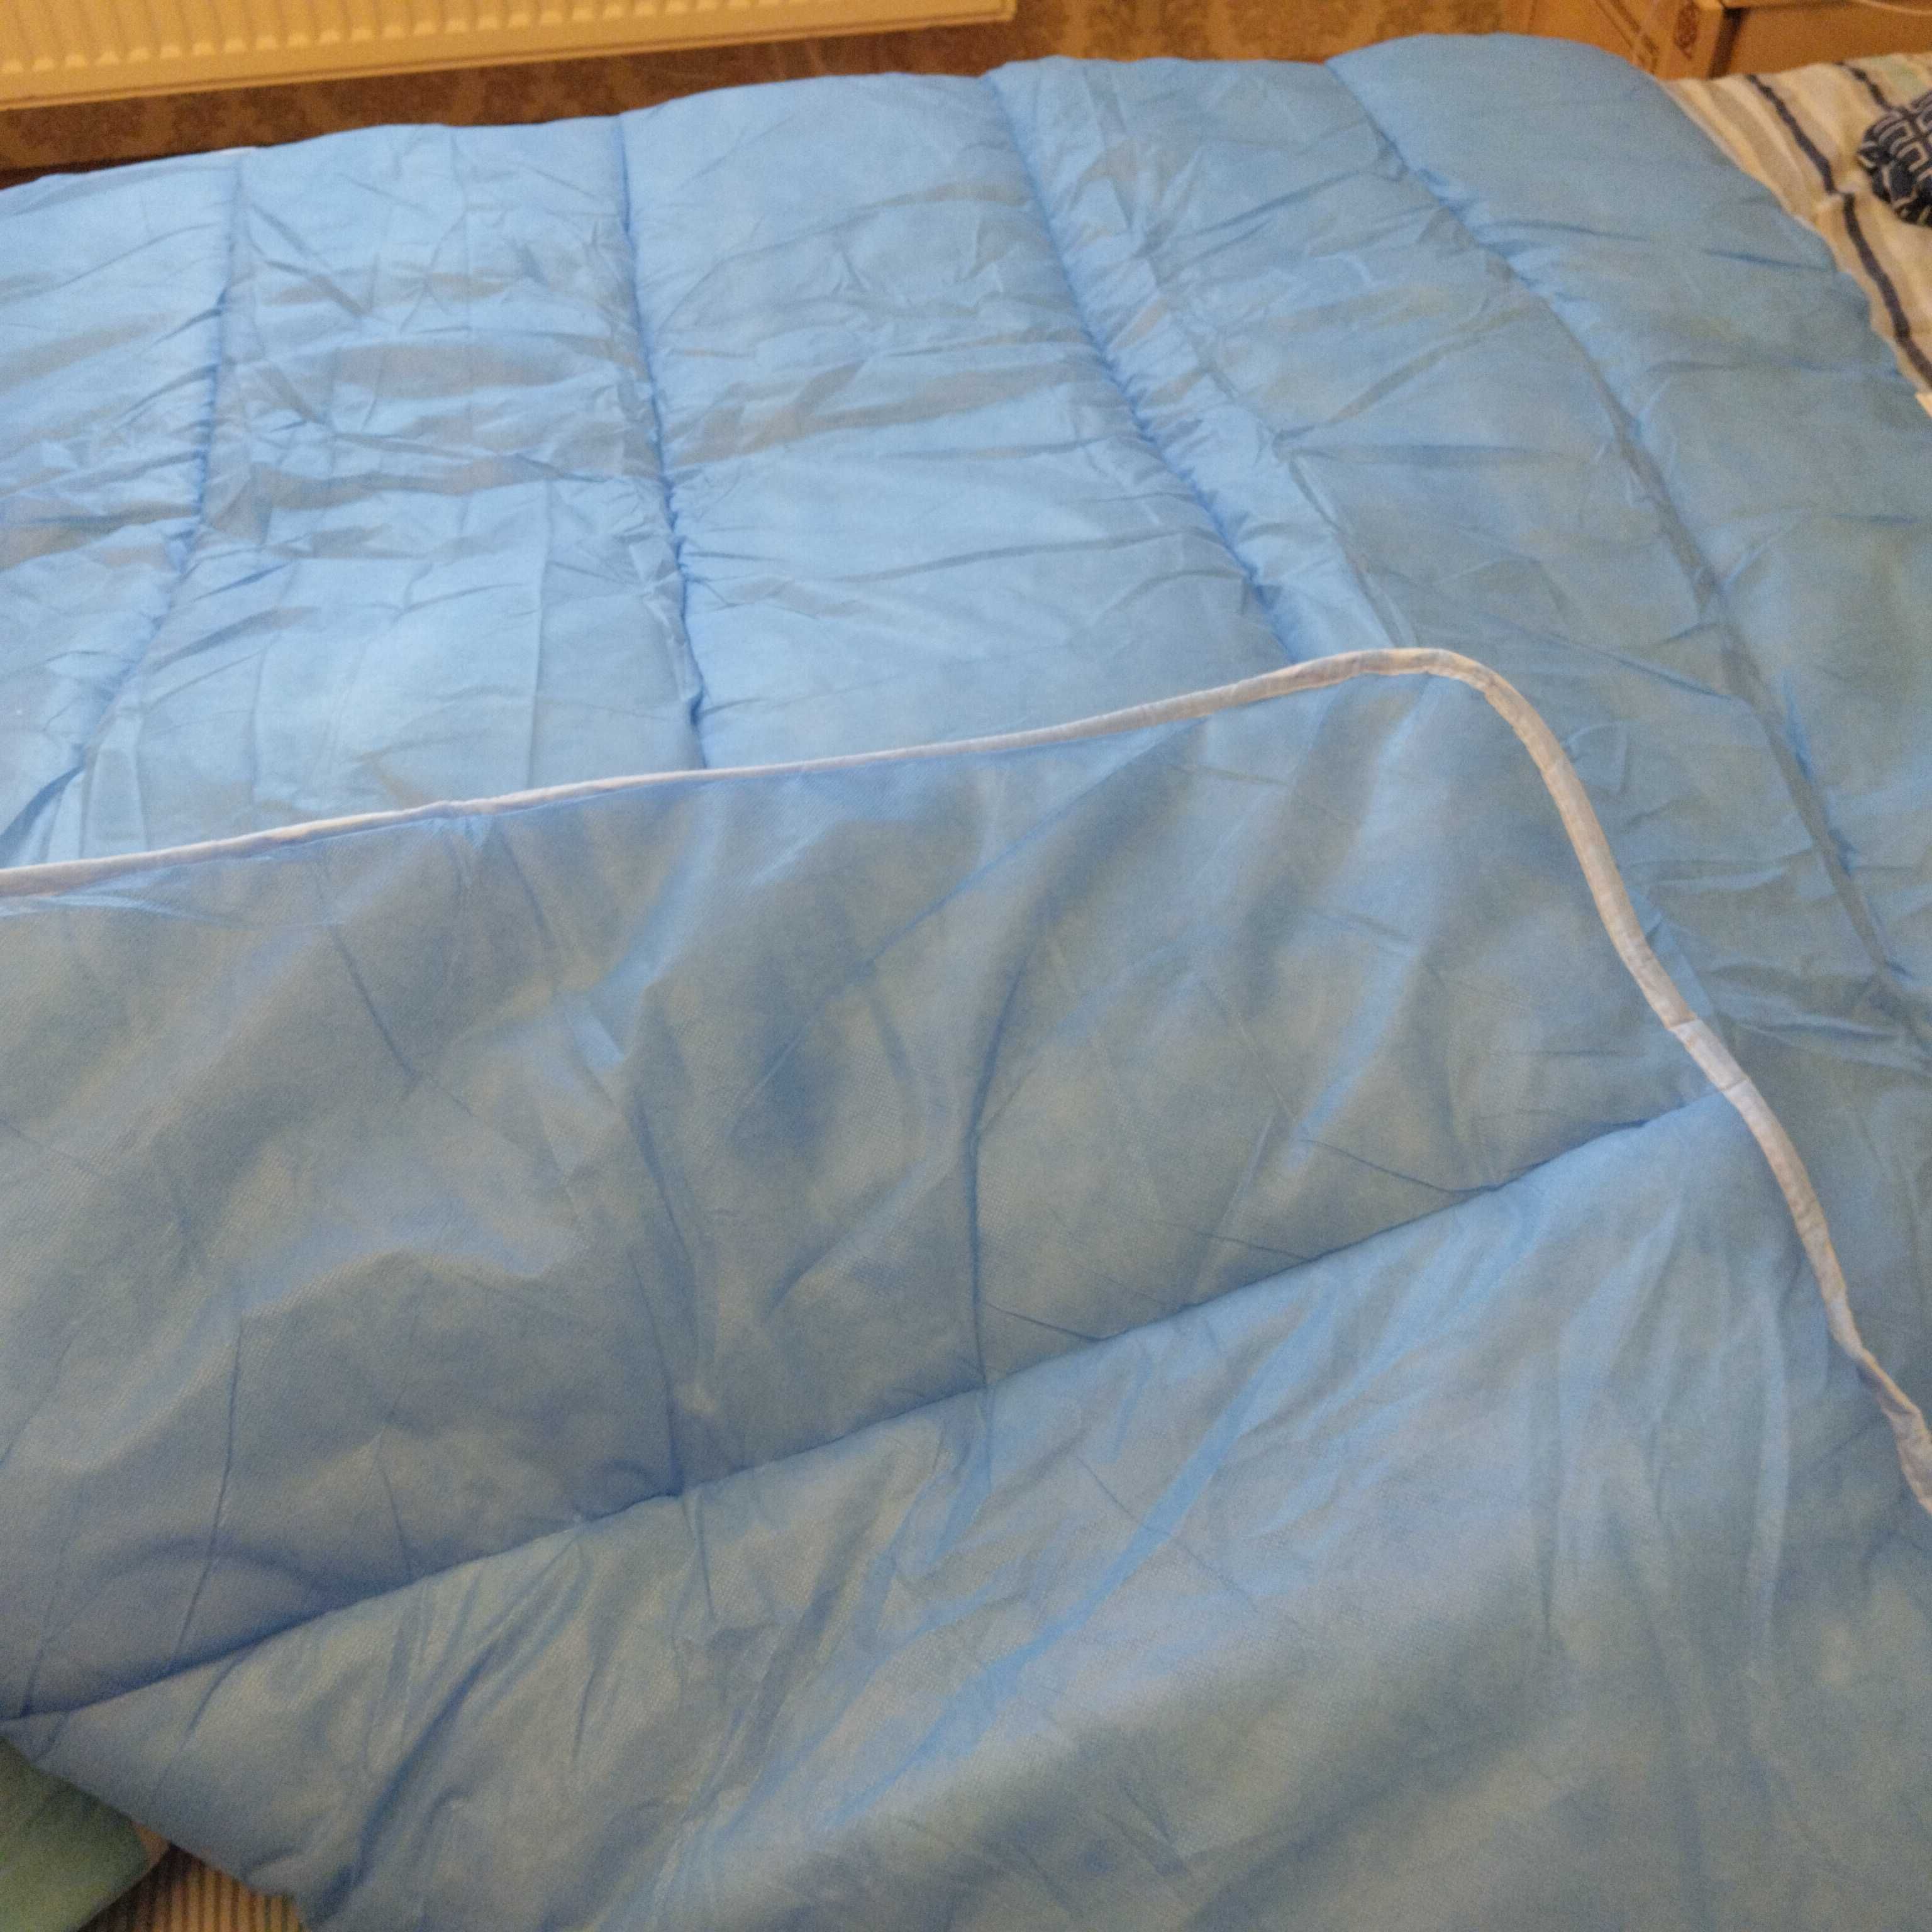 Теплое одеяло 145*210 и подушка, новый комплект! Полиэстер.